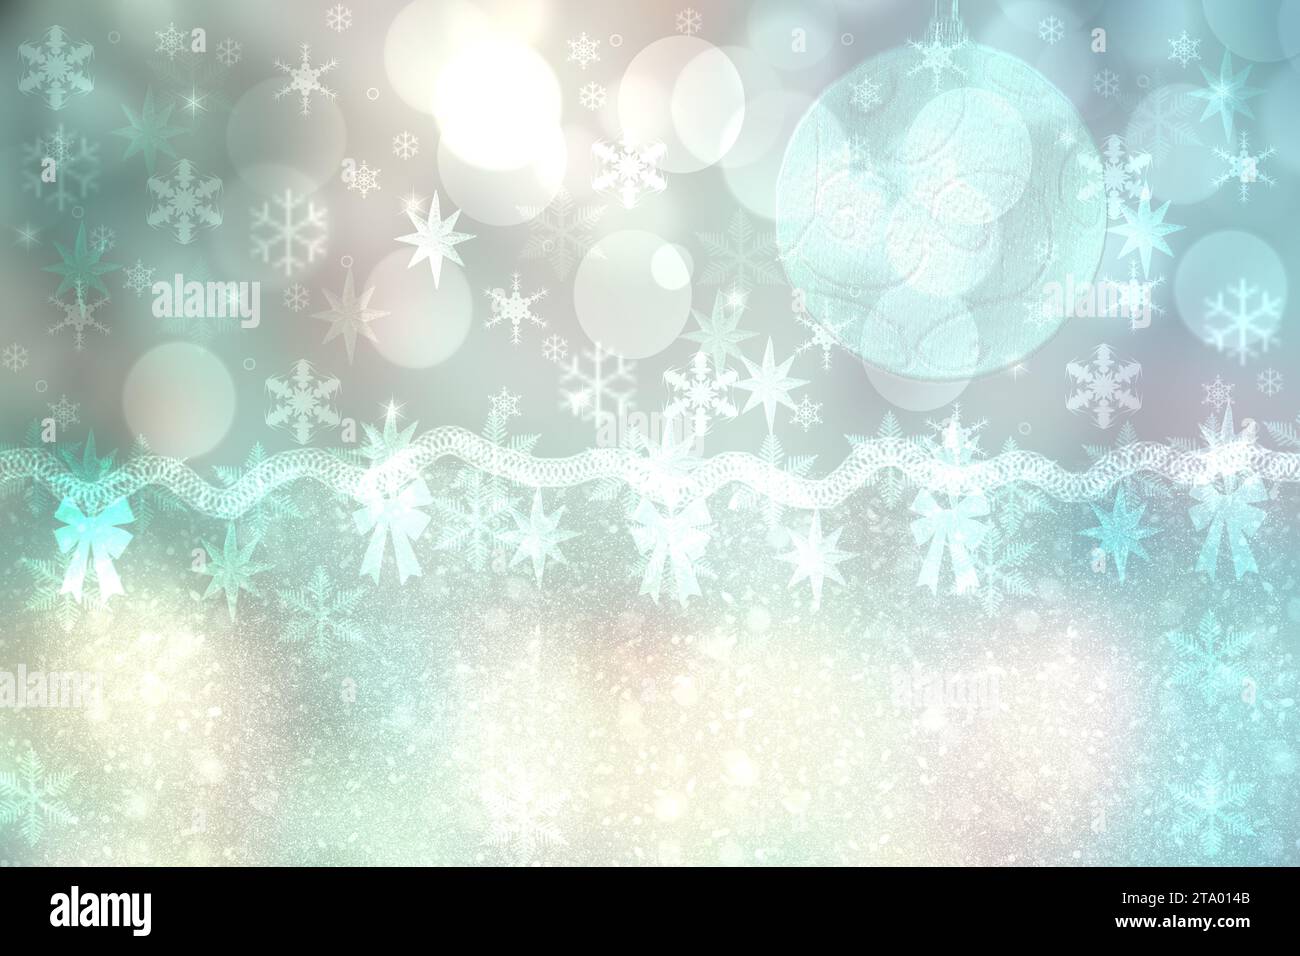 Abstrait flou festif vert blanc hiver noël ou bonne année texture de fond avec des cercles et des étoiles bokeh brillants. Concept de carte. Banque D'Images